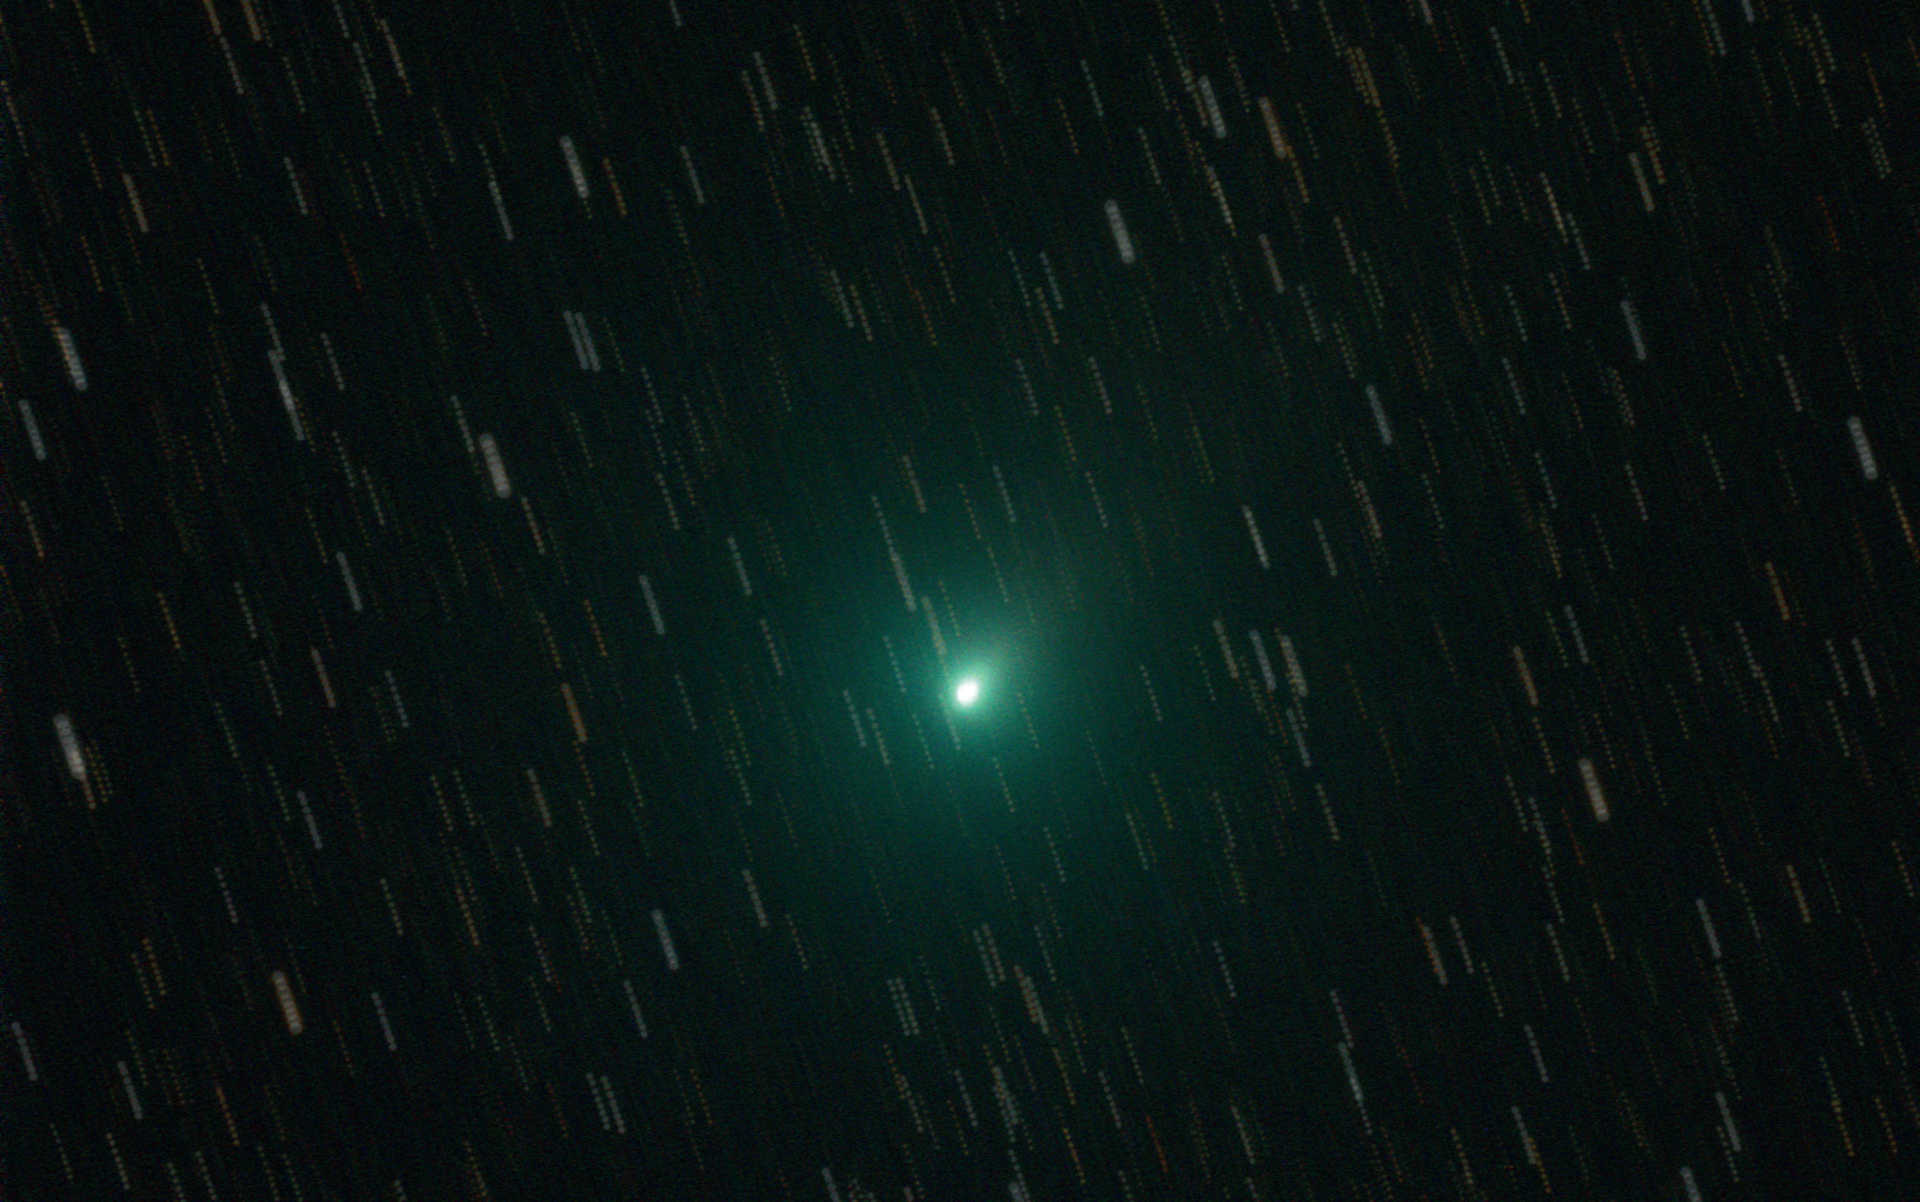 Empilement d’images de la comète 103P (Hartley). Deux possibilités s’offrent à vous pour traiter les images : soit vous centrez les images individuelles sur les comètes, de sorte que les étoiles apparaissent sous forme de traits sur l’empilement d’images et montrent ainsi de façon impressionnante le parcours dynamique d’une comète devant le ciel nocturne (a),